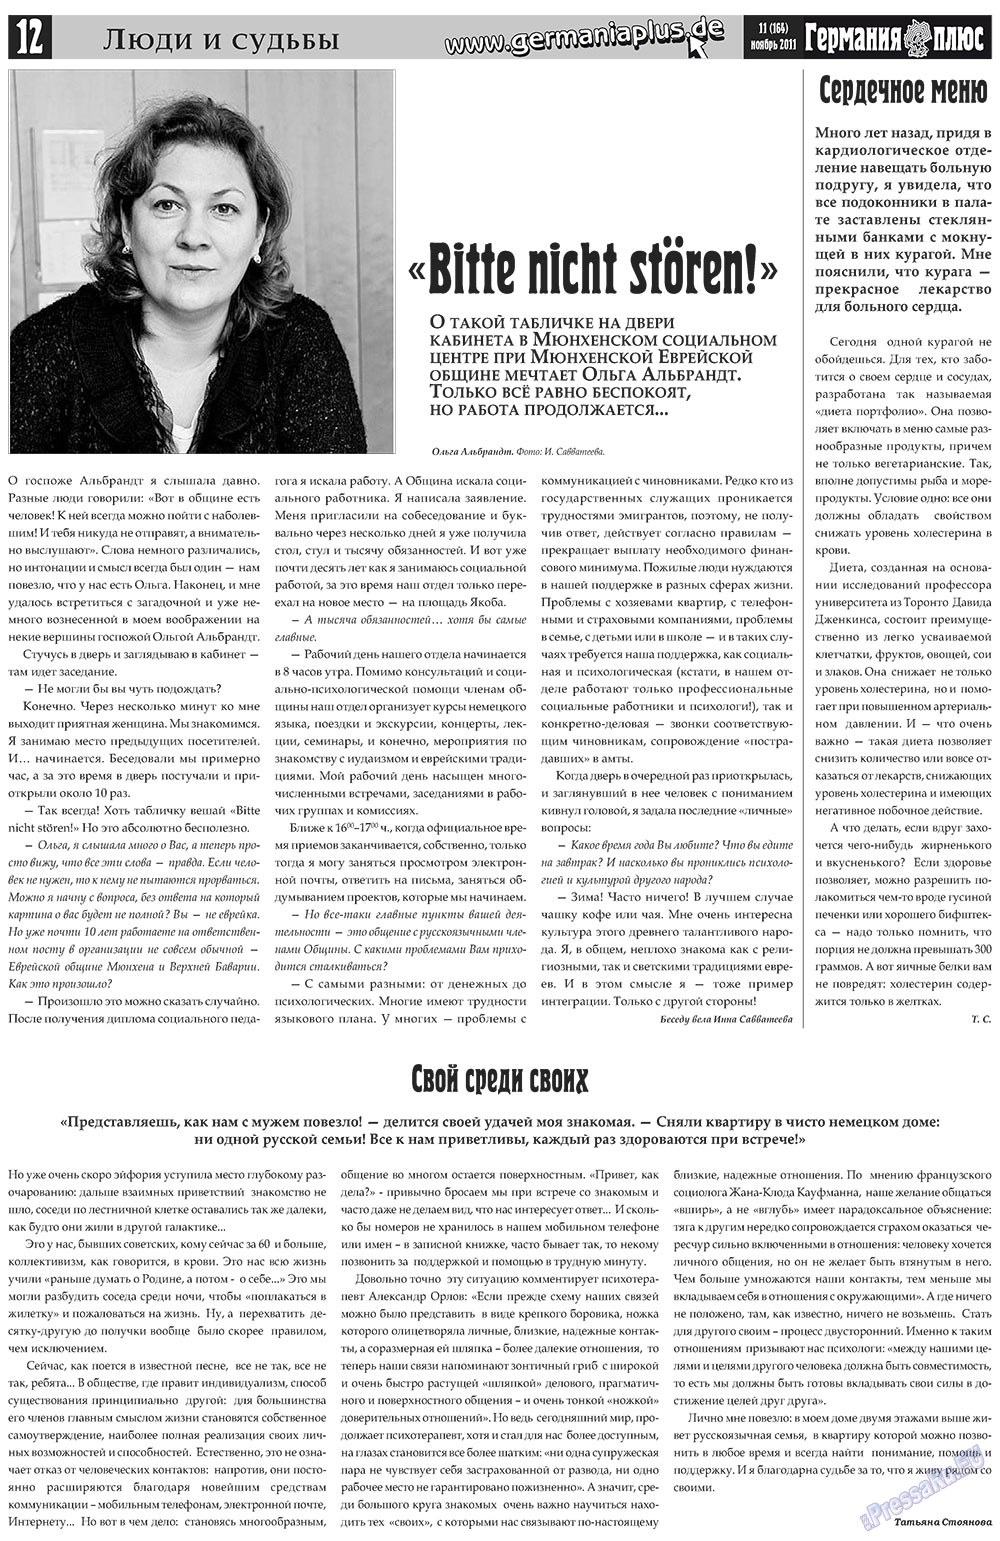 Германия плюс, газета. 2011 №11 стр.12